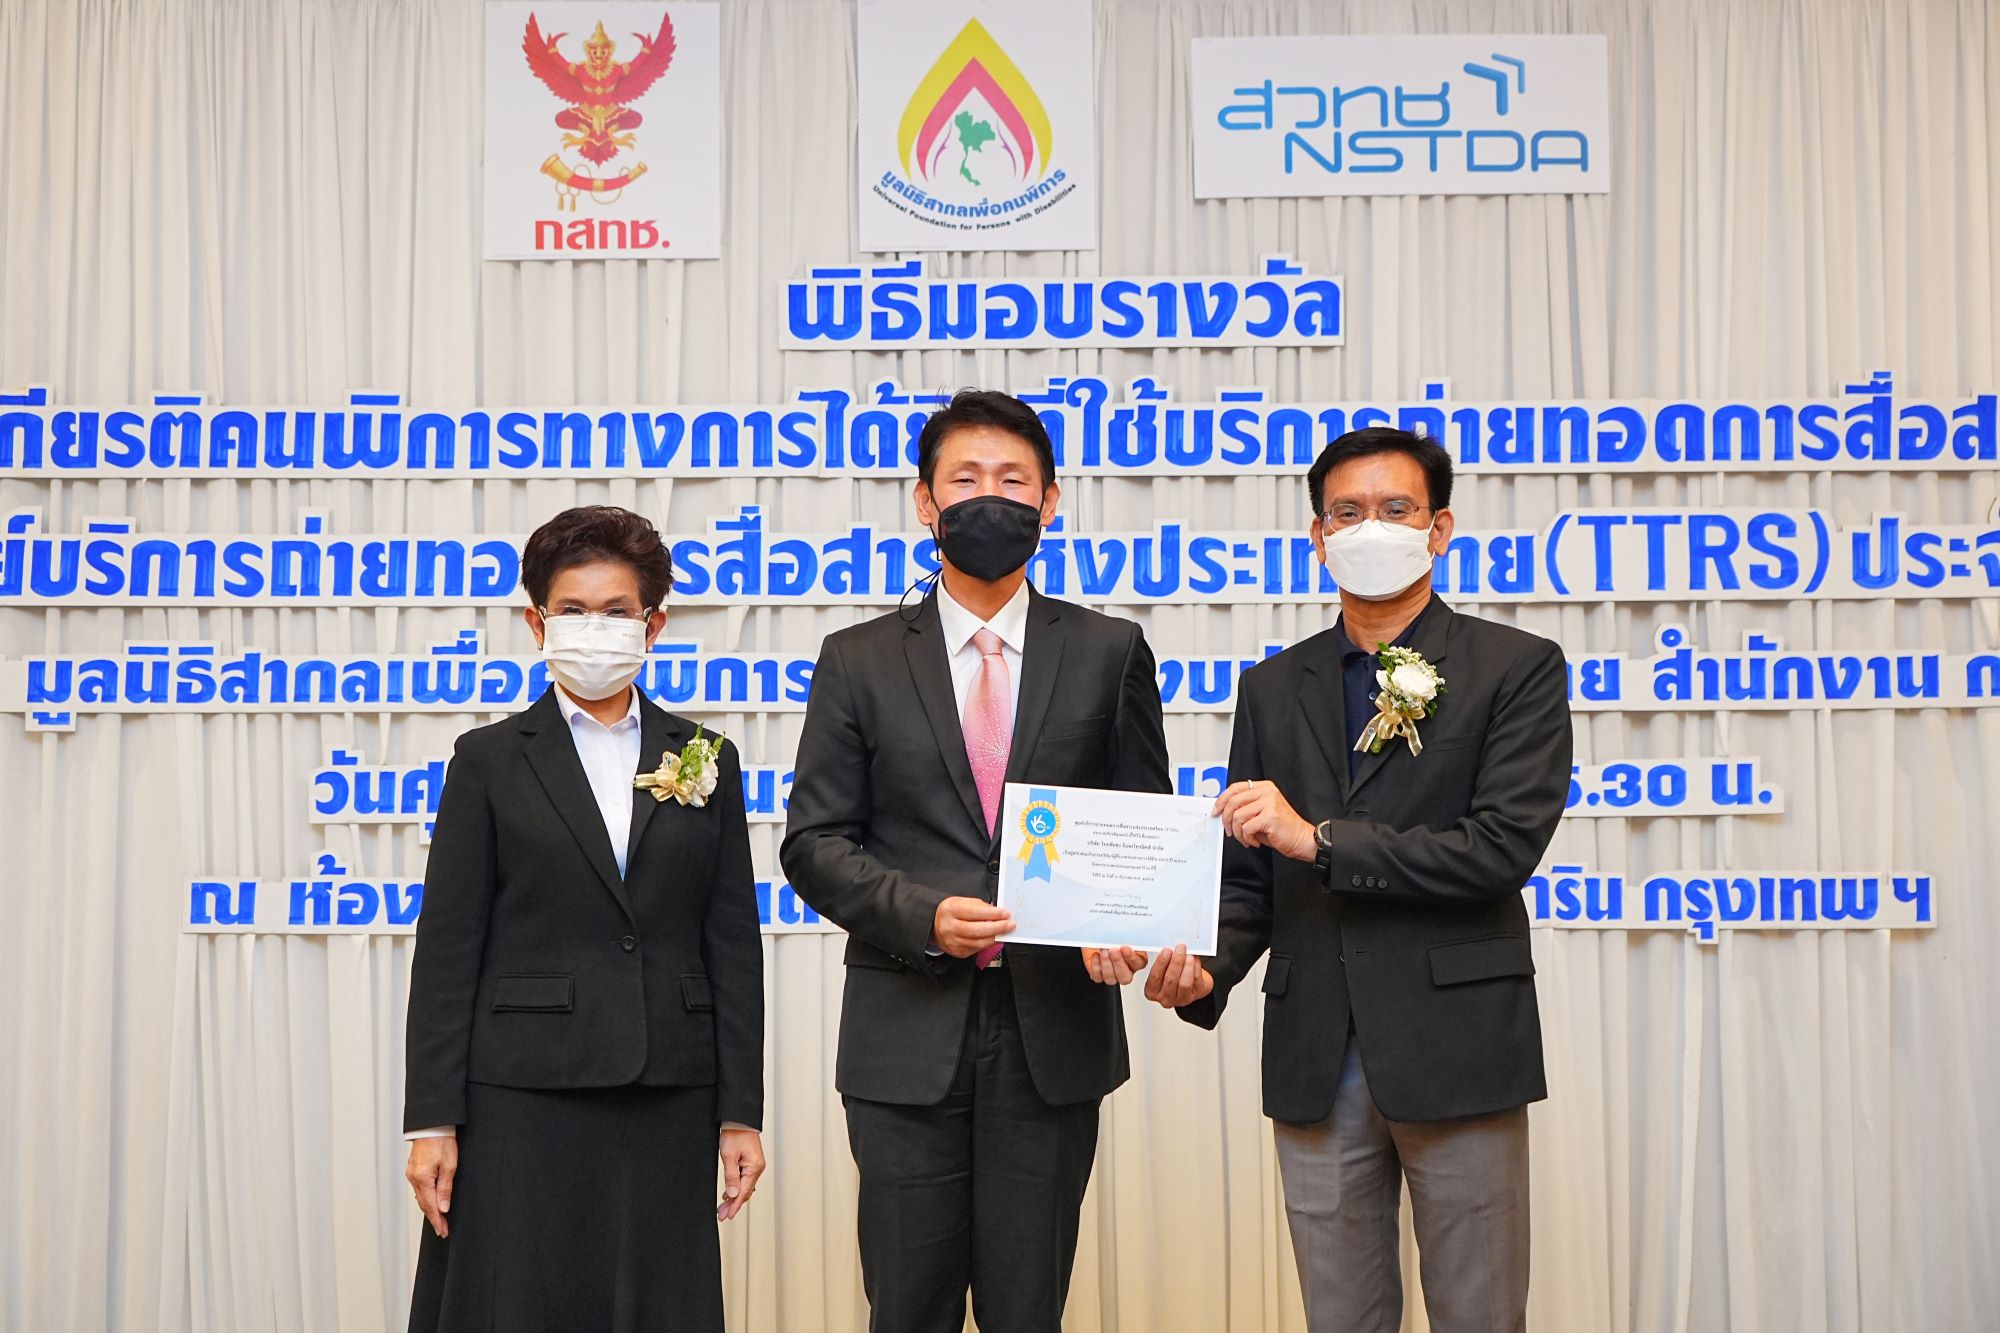 ซัมชุงเข้ารับประกาศเกียรติคุณ ในงานพิธีมอบรางวัลเชิดชูเกียรติคนพิการทางการได้ยินที่ใช้บริการถ่ายทอดการสื่อสารสูงสุด ของศูนย์บริการถ่ายทอดการสื่อสารแห่งประเทศไทย (TTRS) ประจำปี 2565